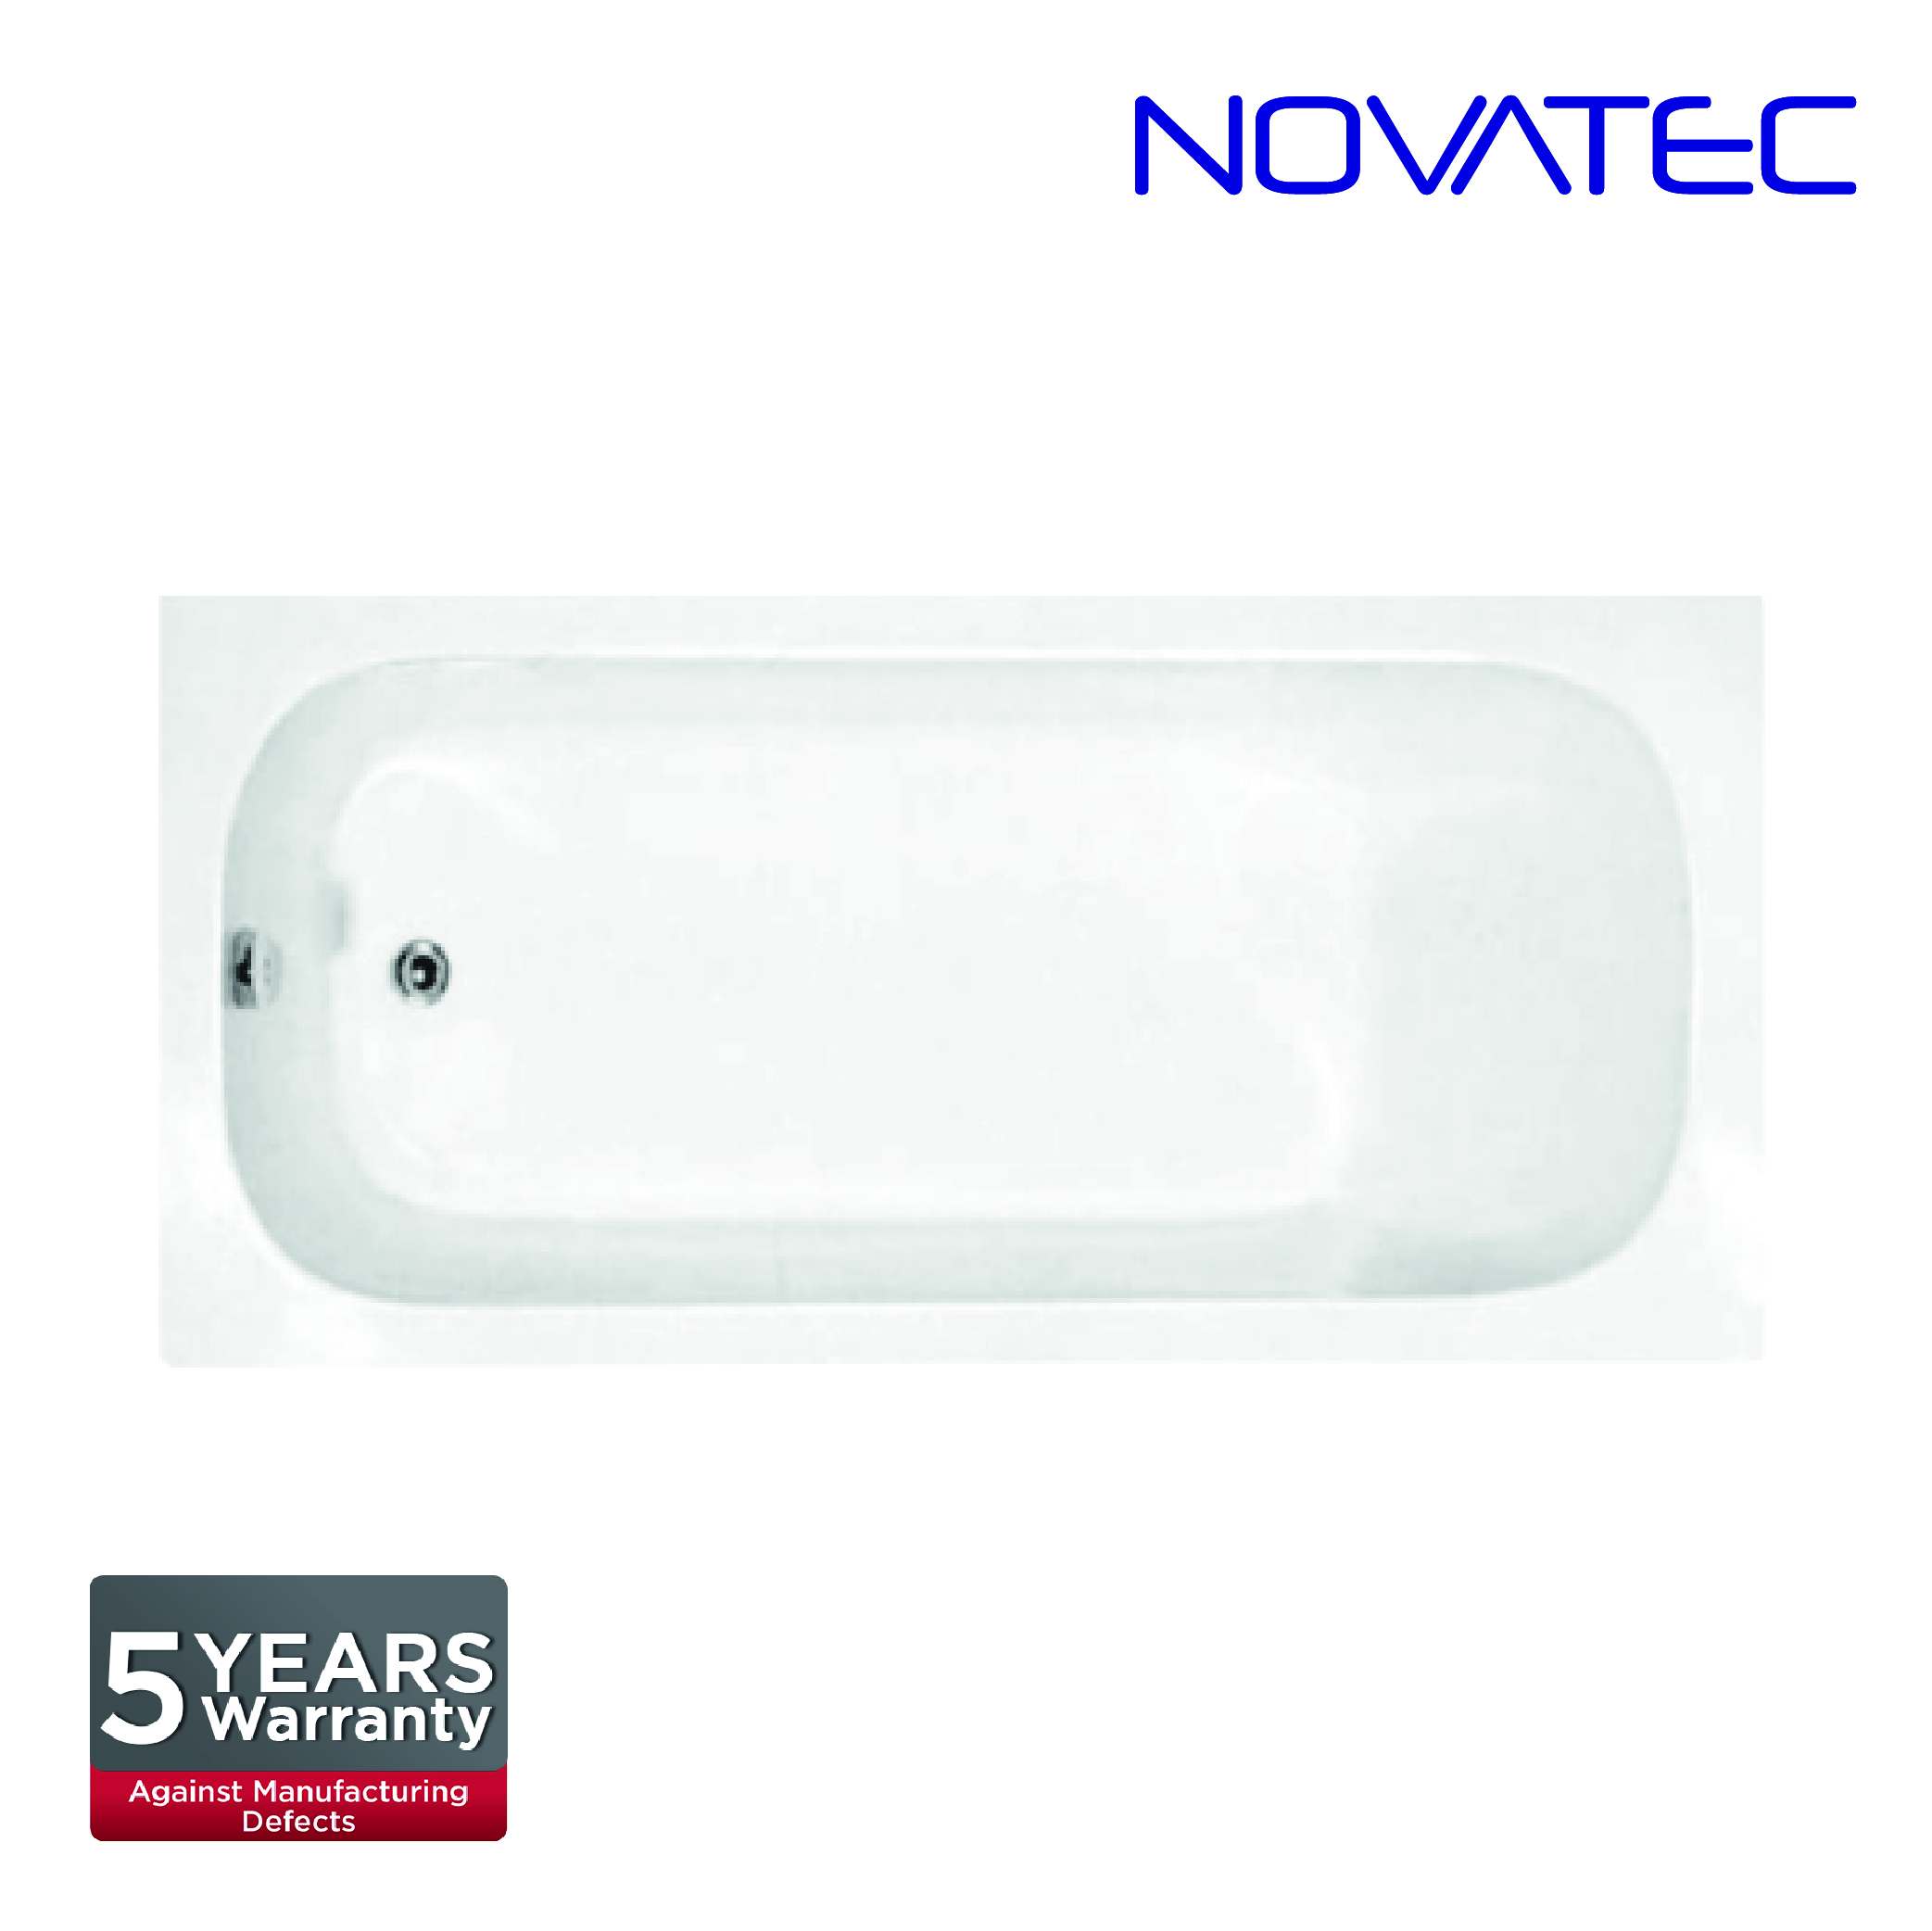 Novatec SW Rome Bath Tub AT-BT160307C